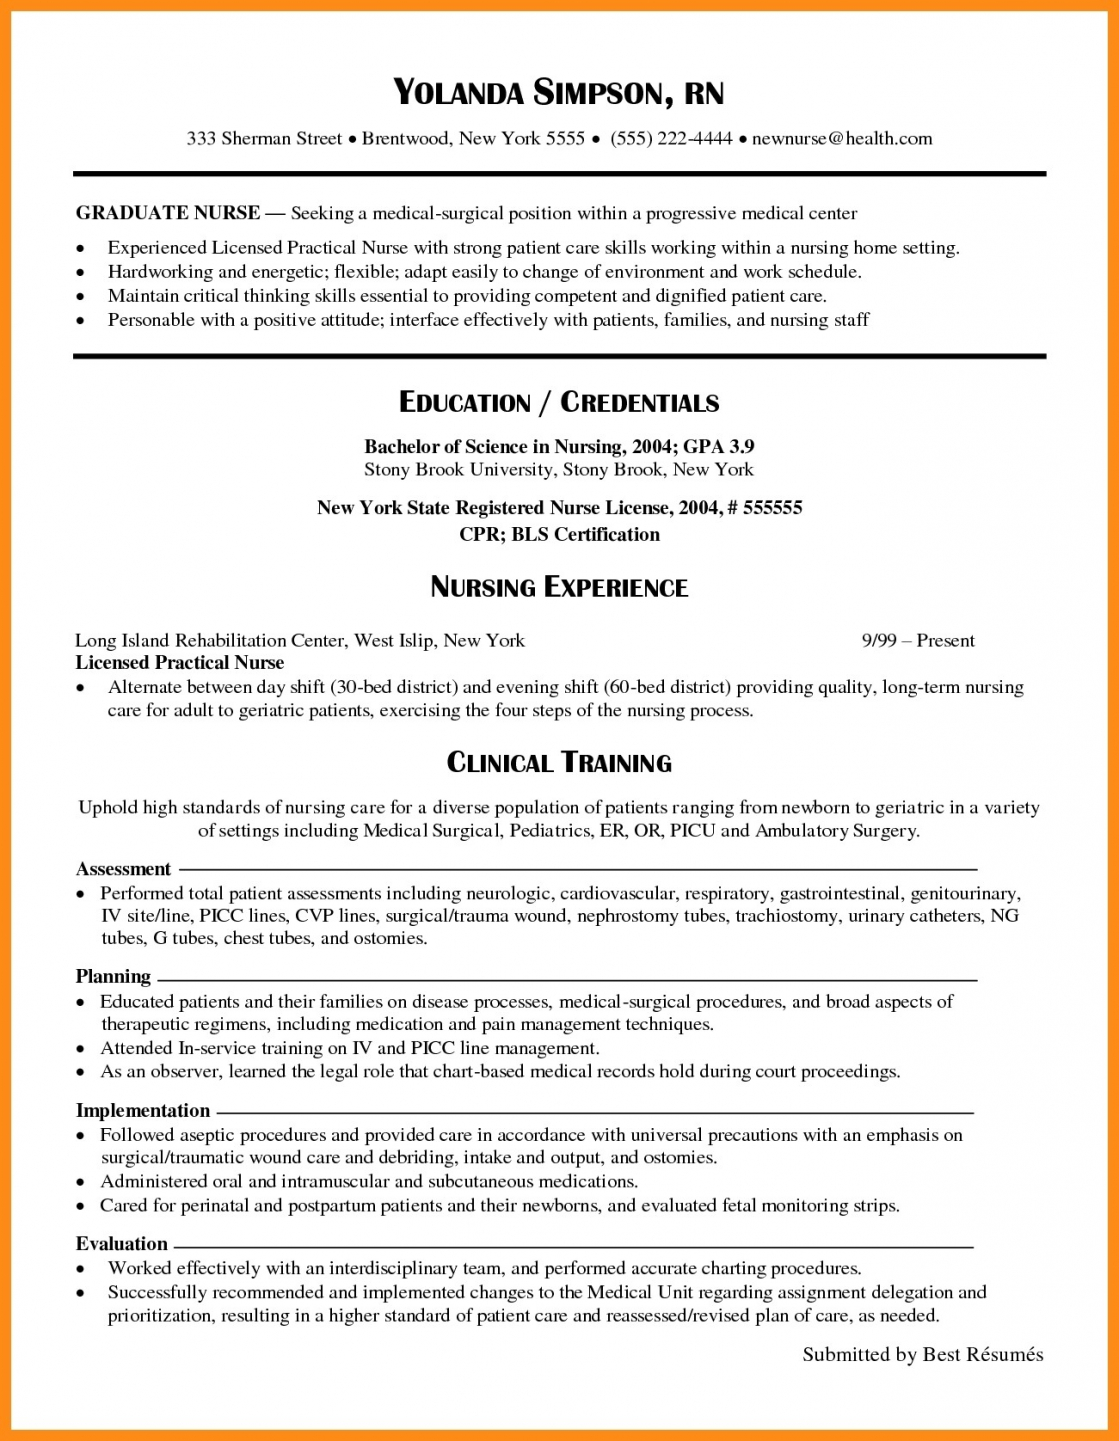 New Grad Nurse Resume New Grad Rn Resume Template Viaweb 1 new grad nurse resume|wikiresume.com